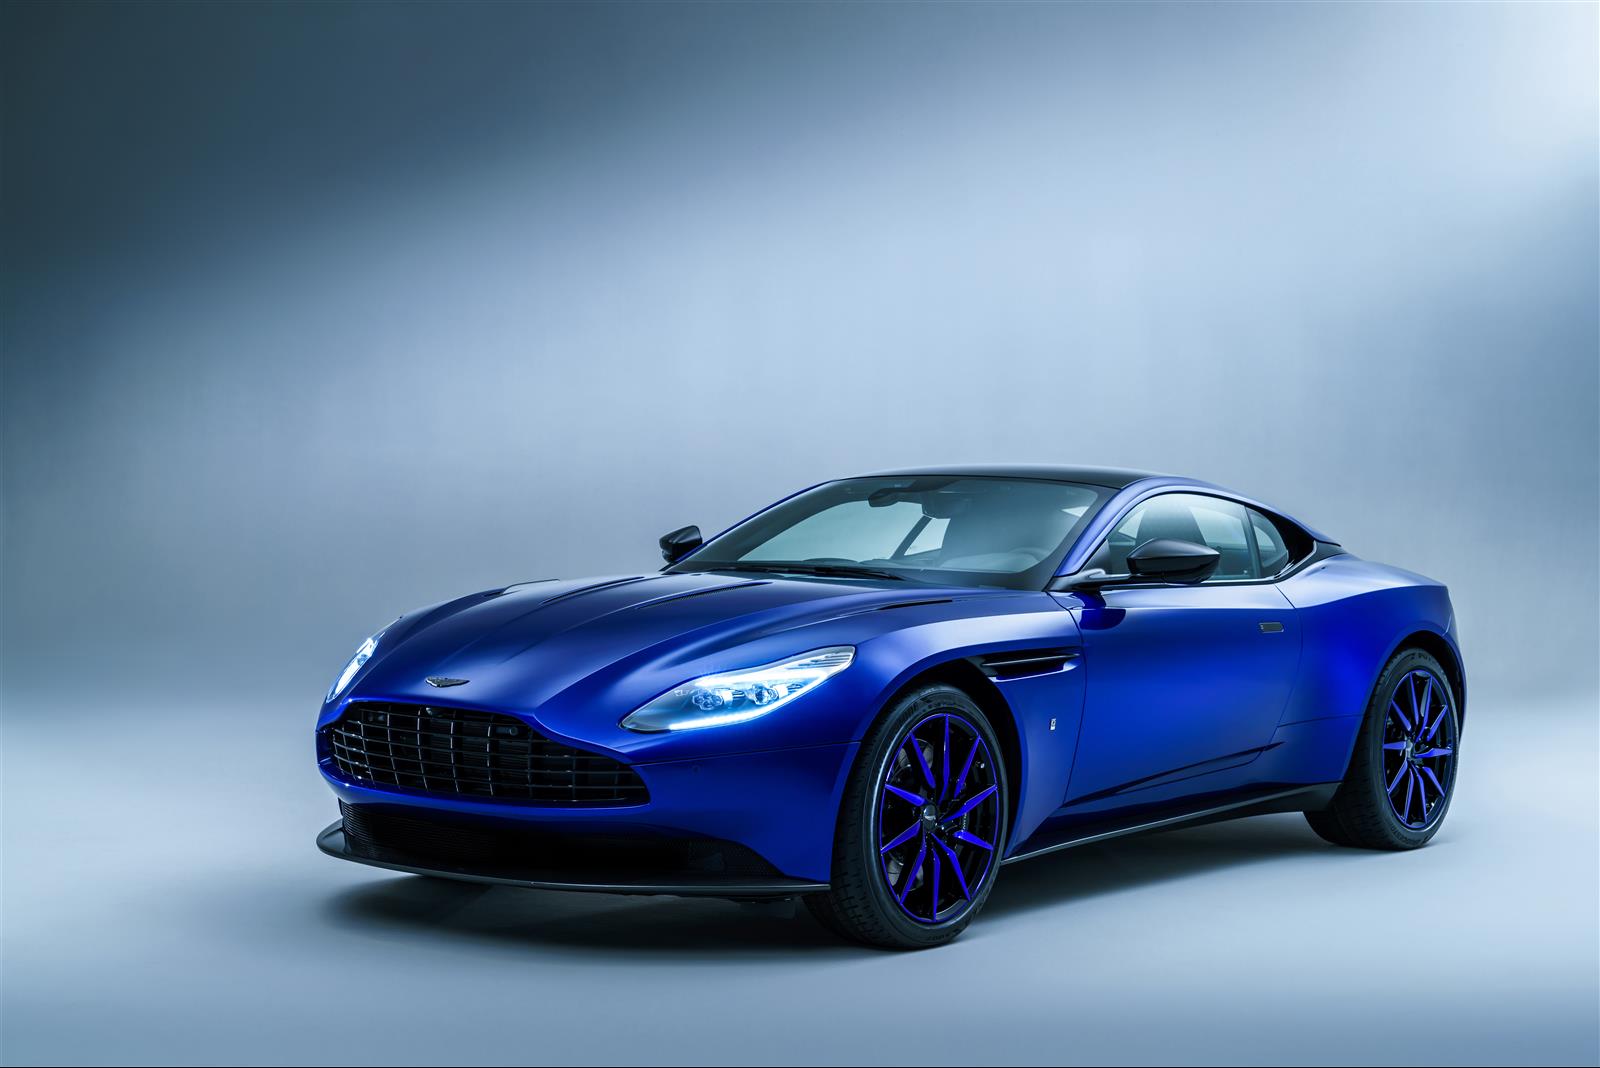 Aston Martin Perluas Divisi Q Untuk Hadirkan Mobil Yang Sangat Unik